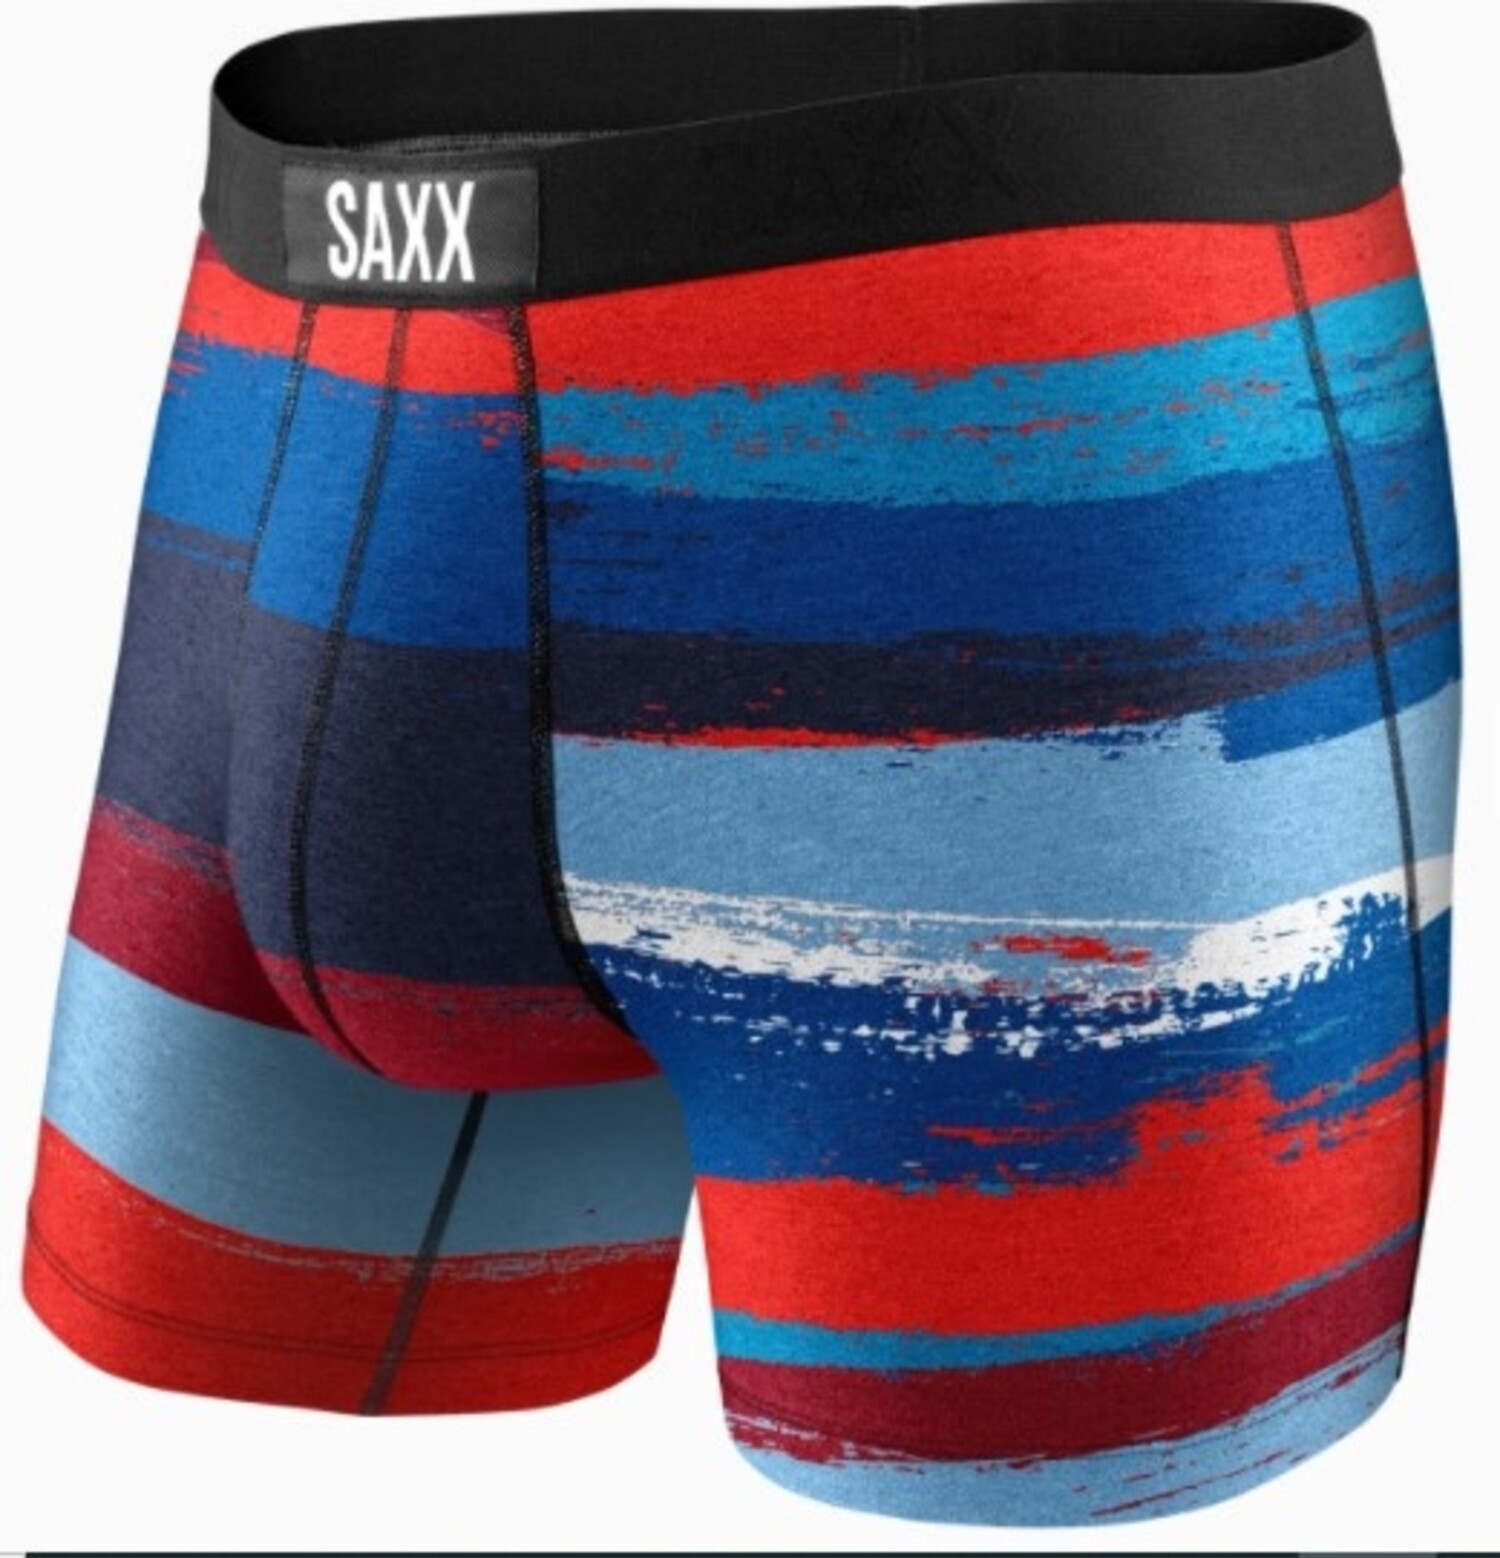 Saxx Underwear Men's Vibe Super Soft Boxer Brief - SXBM35